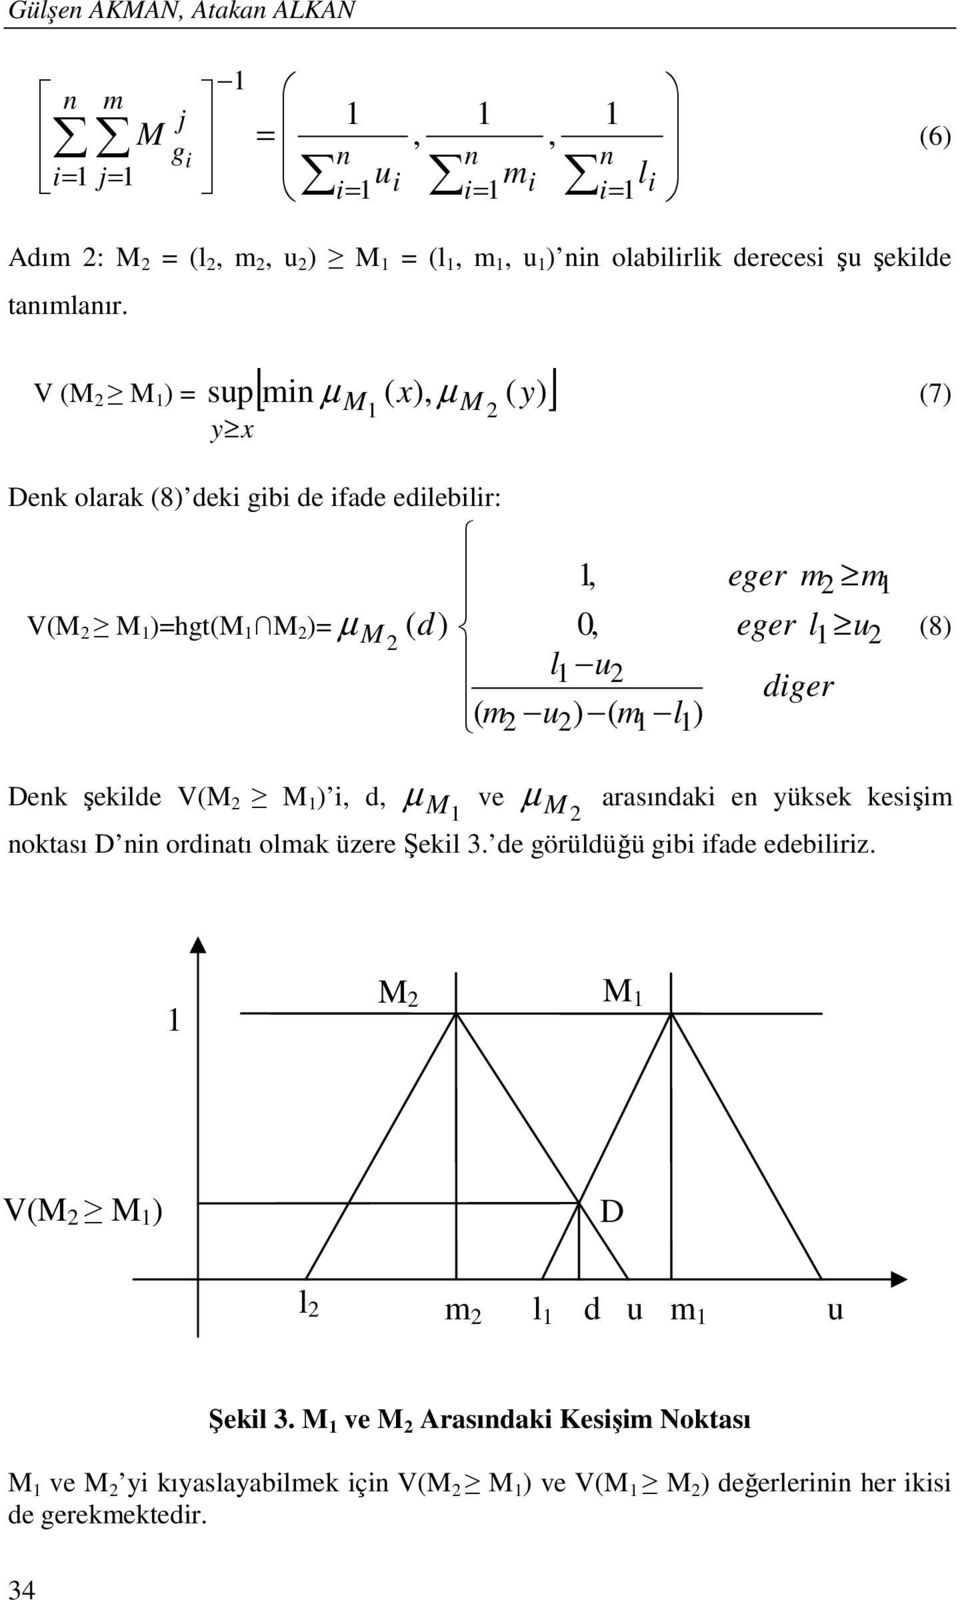 V (M 2 M 1 ) = sup[ min µ ( x), µ ( y) ] y x M 1 M 2 (7) Denk olarak (8) deki gibi de ifade edilebilir: 1, V(M 2 M 1 )=hgt(m 1 M 2 )= µ M 2 ( d ) 0, l1 u2 ( m2 u2) ( m1 l1) eger m2 m1 eger